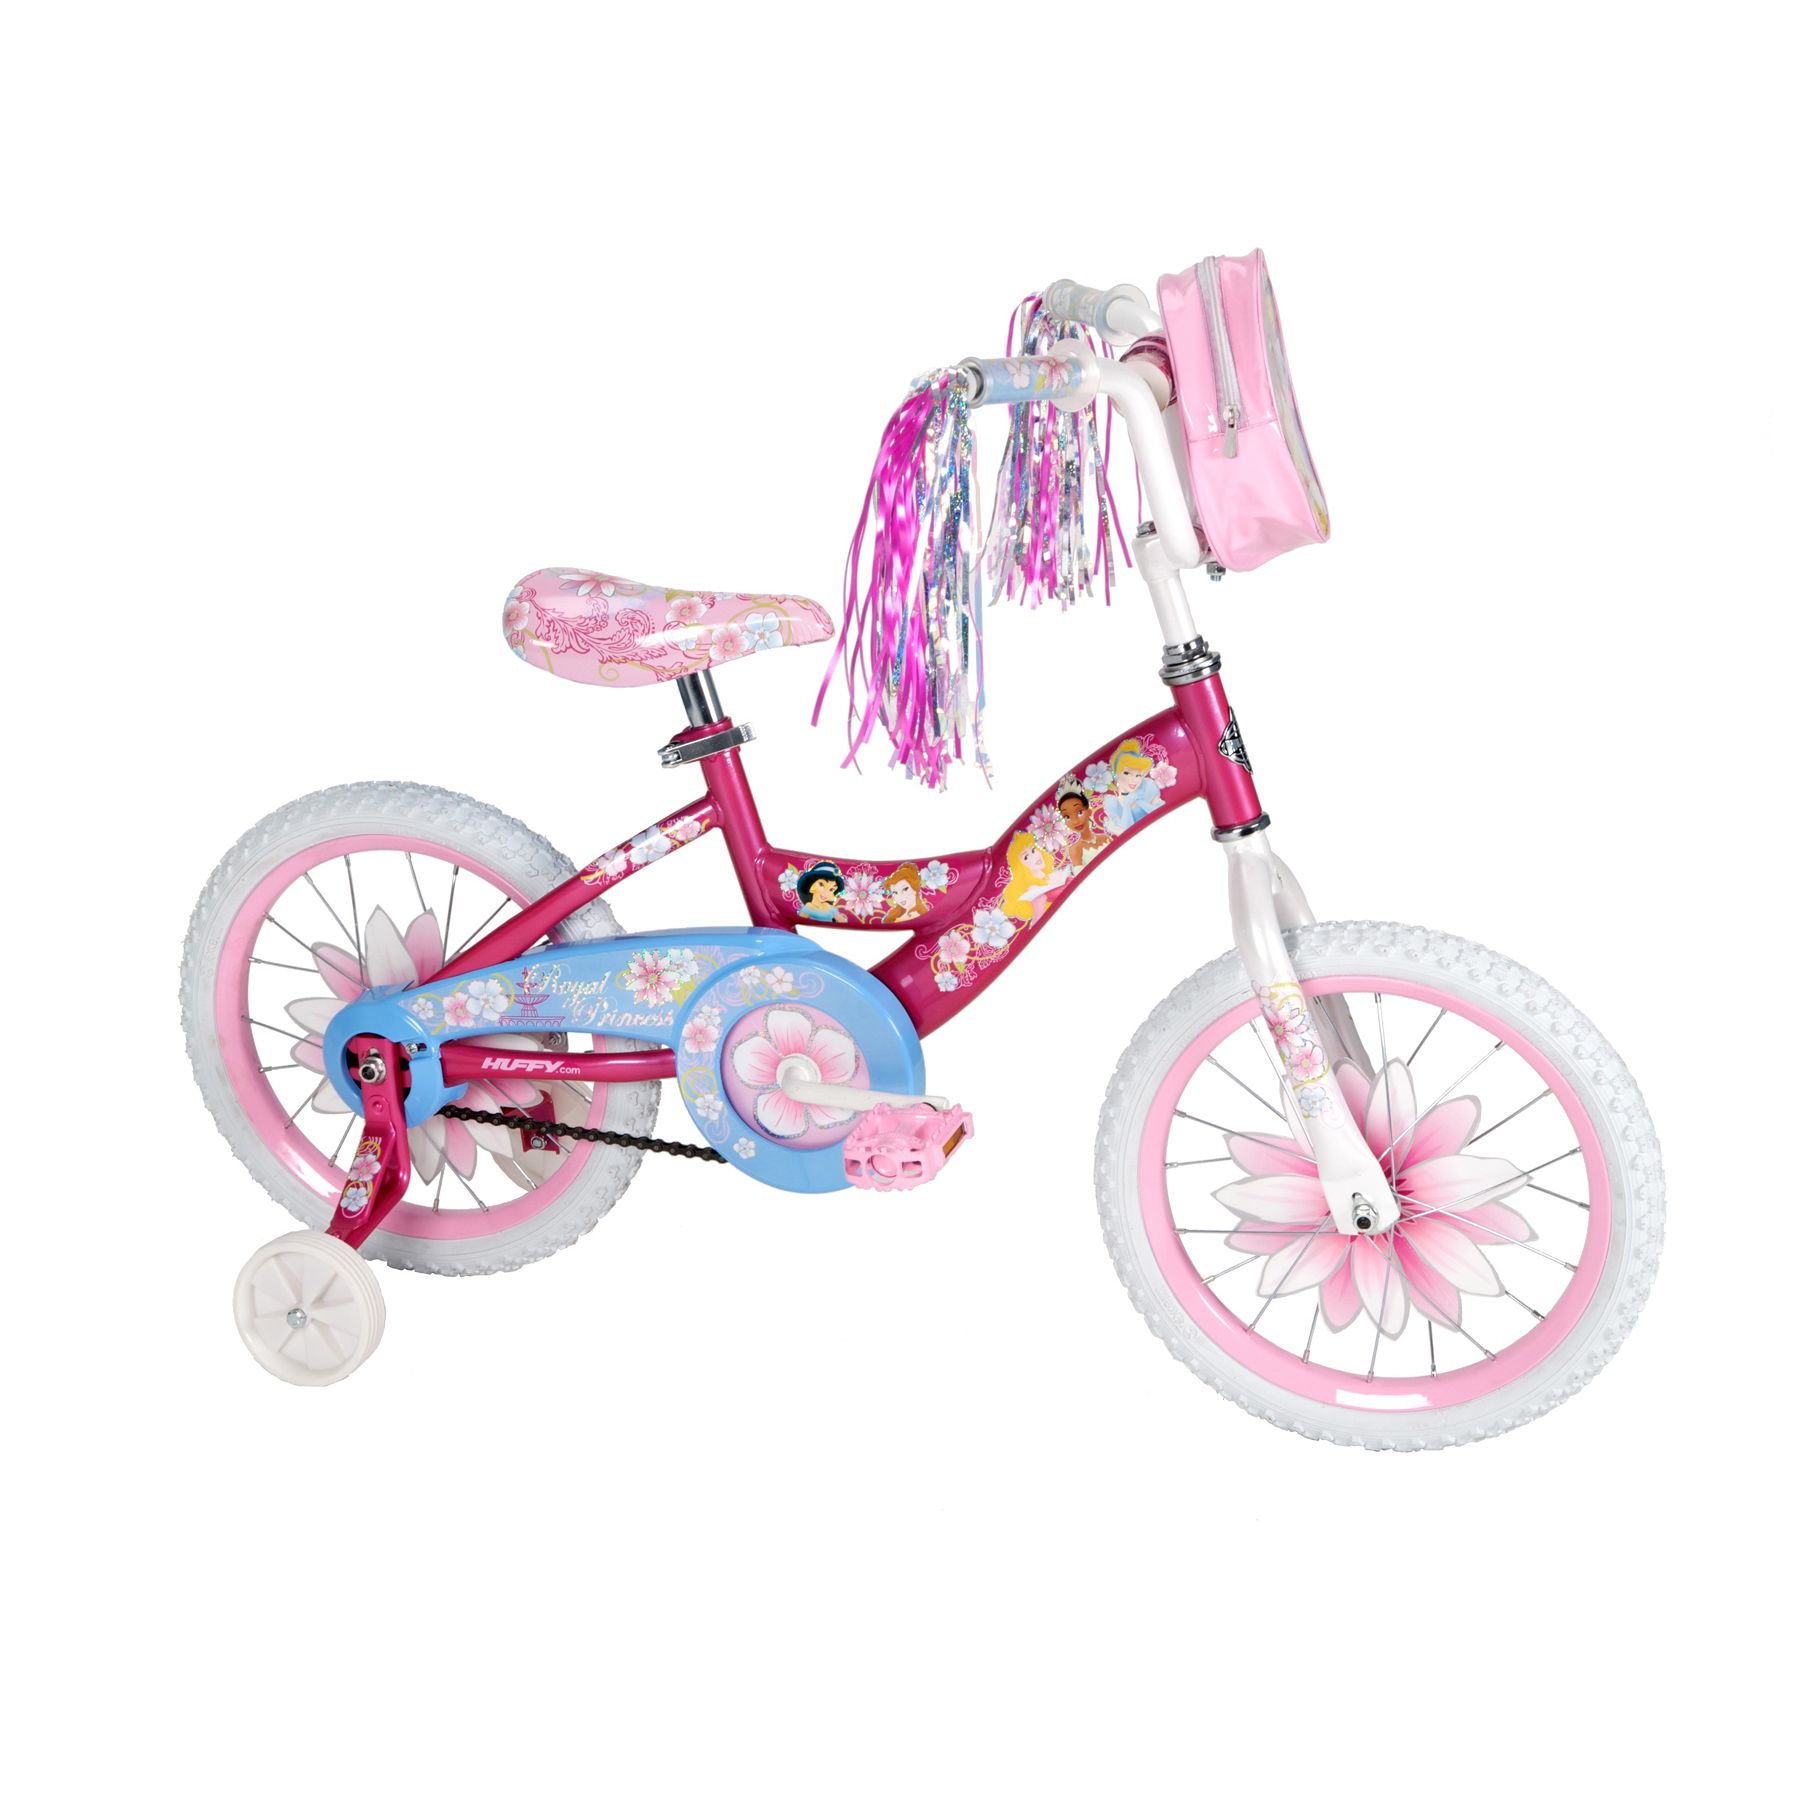 Disney Princess 16" Kids' Bike